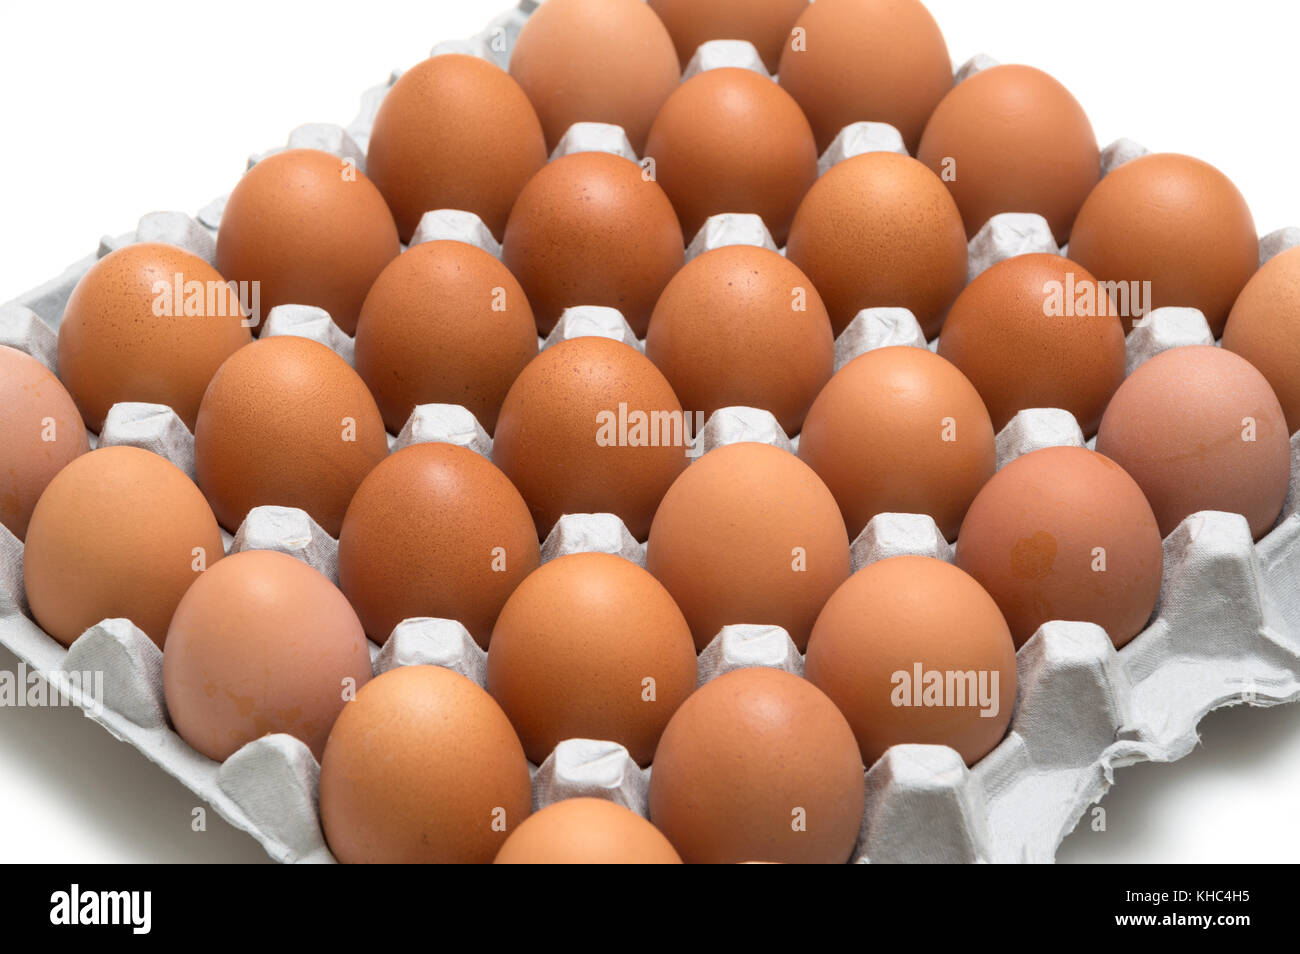 egg isolated on white background Stock Photo